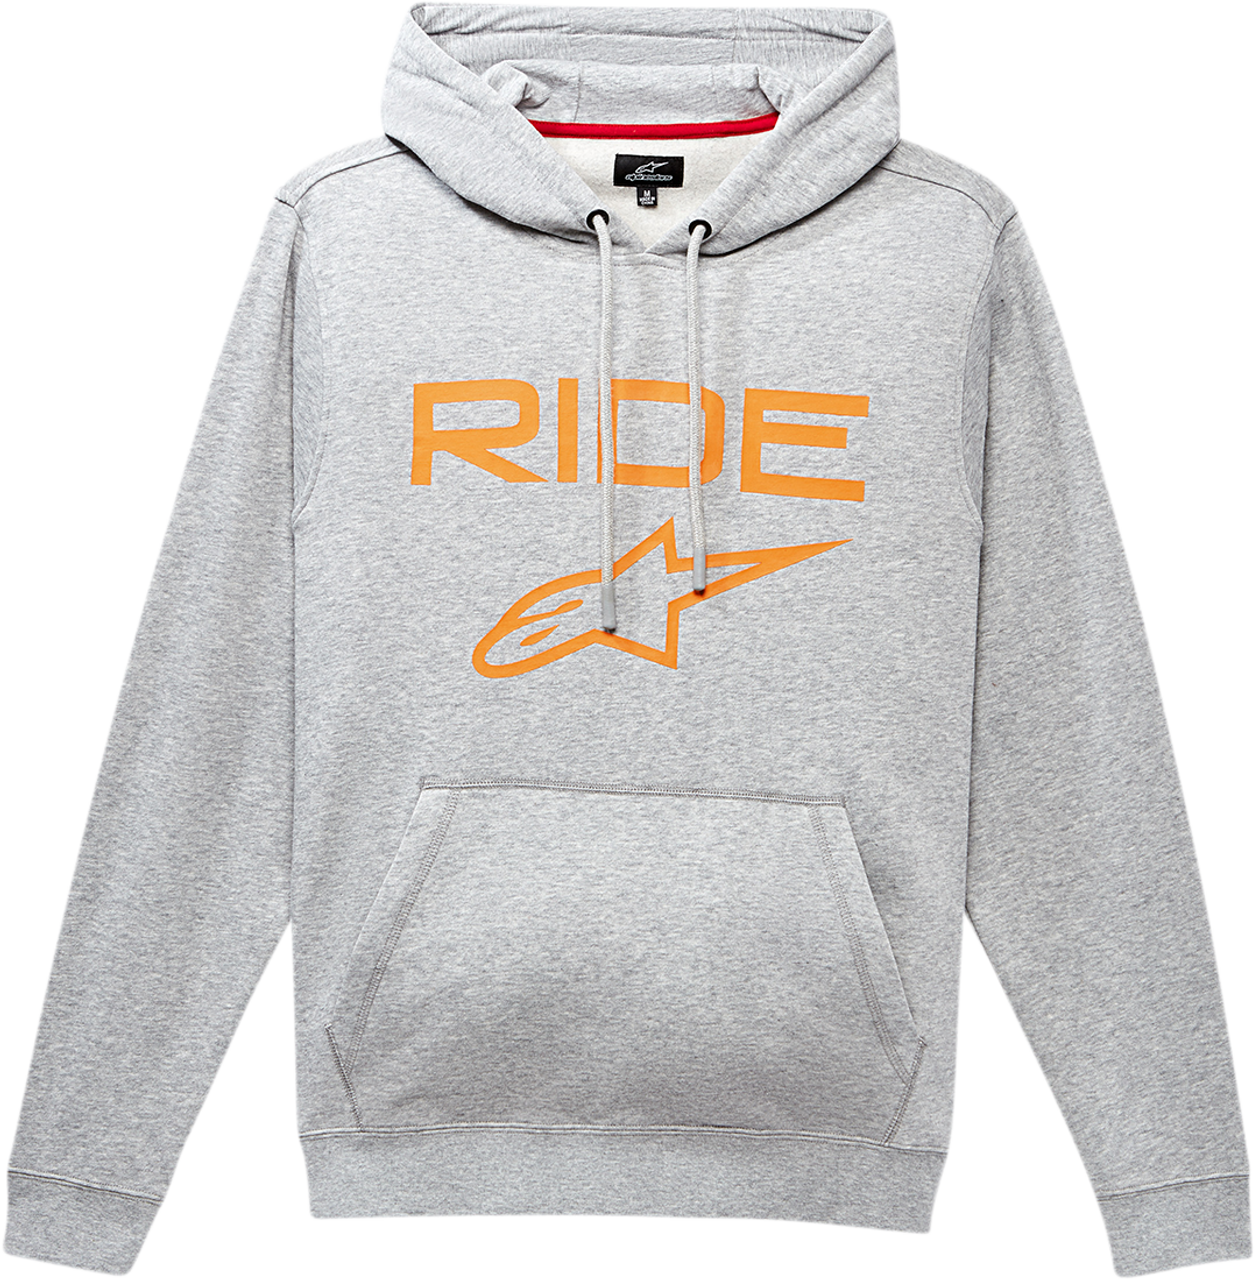 ALPINESTARS Ride 2.0 Hoodie - Gray/Orange - XL 1119510001141XL